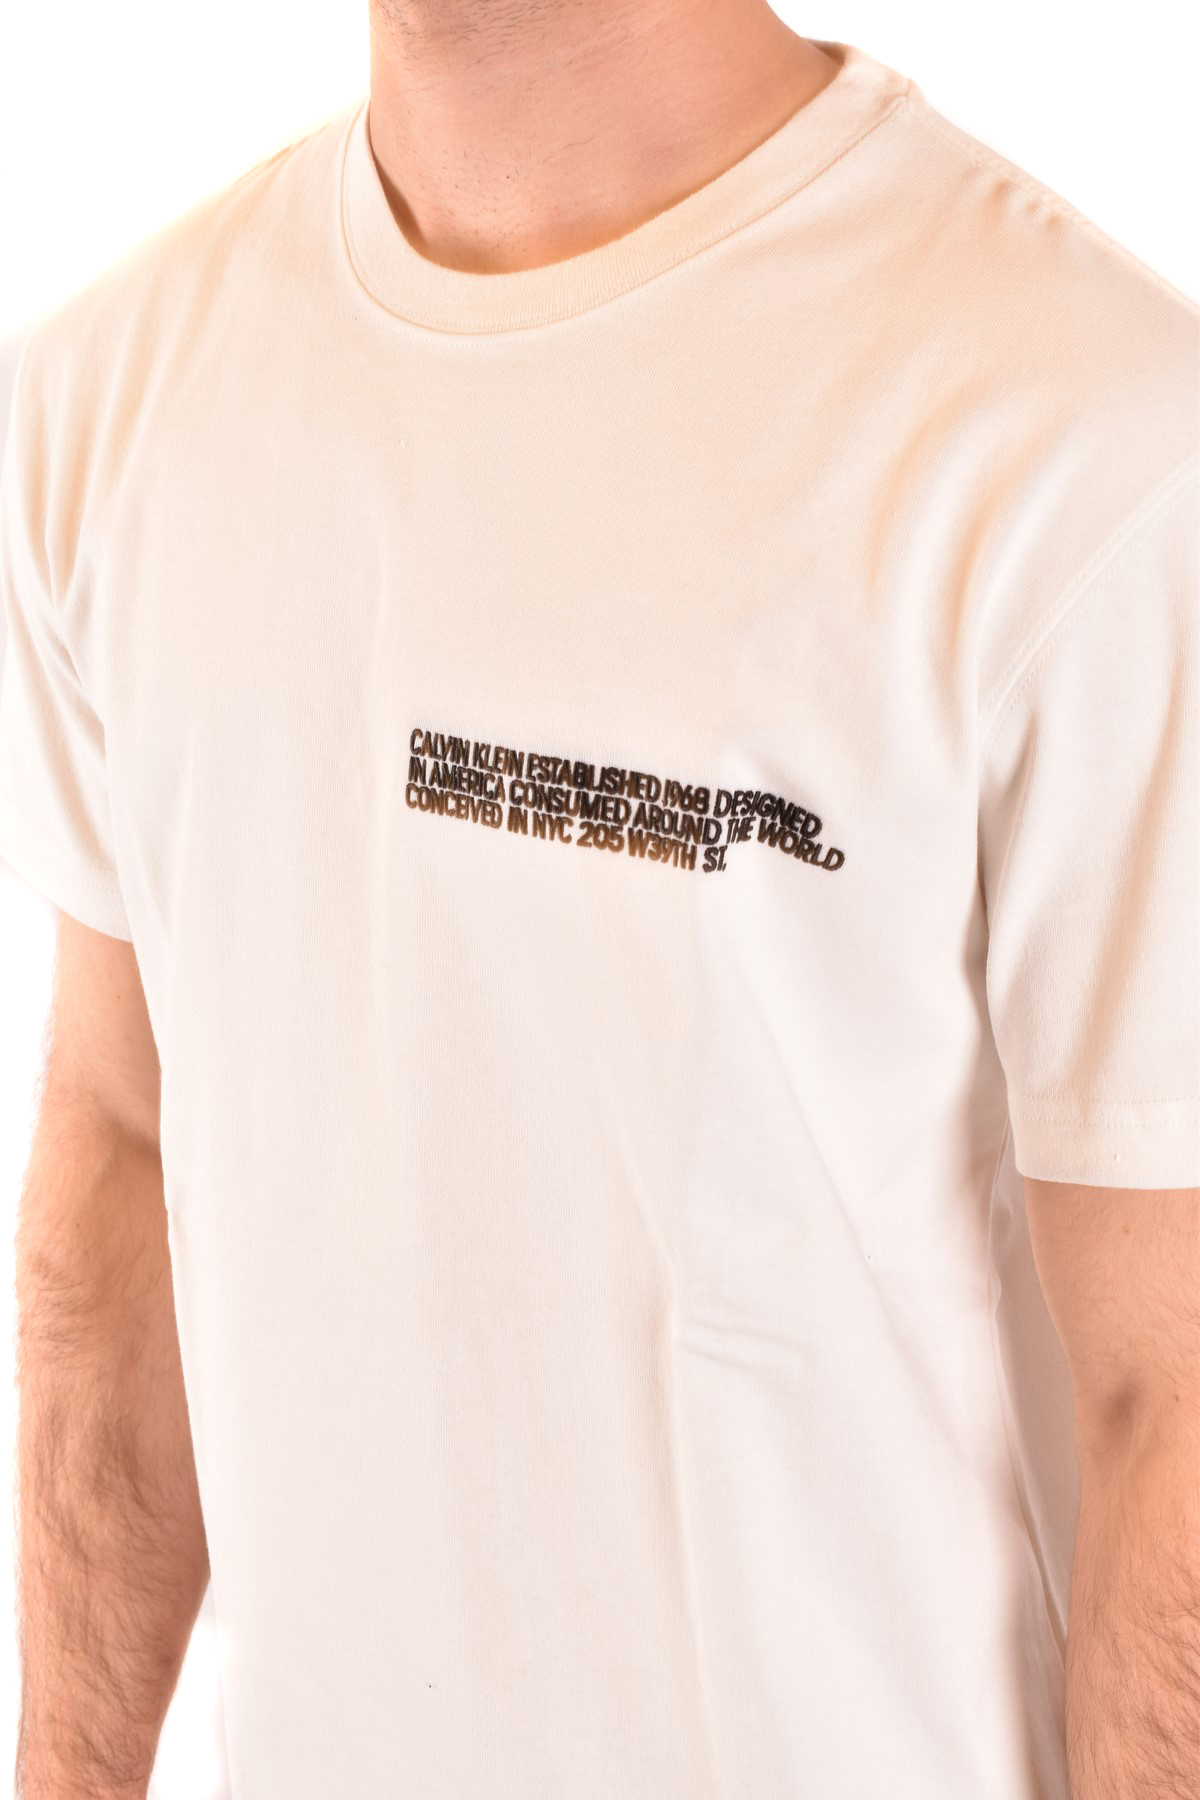 Calvin Klein 205W39nyc T-Shirt | eBay